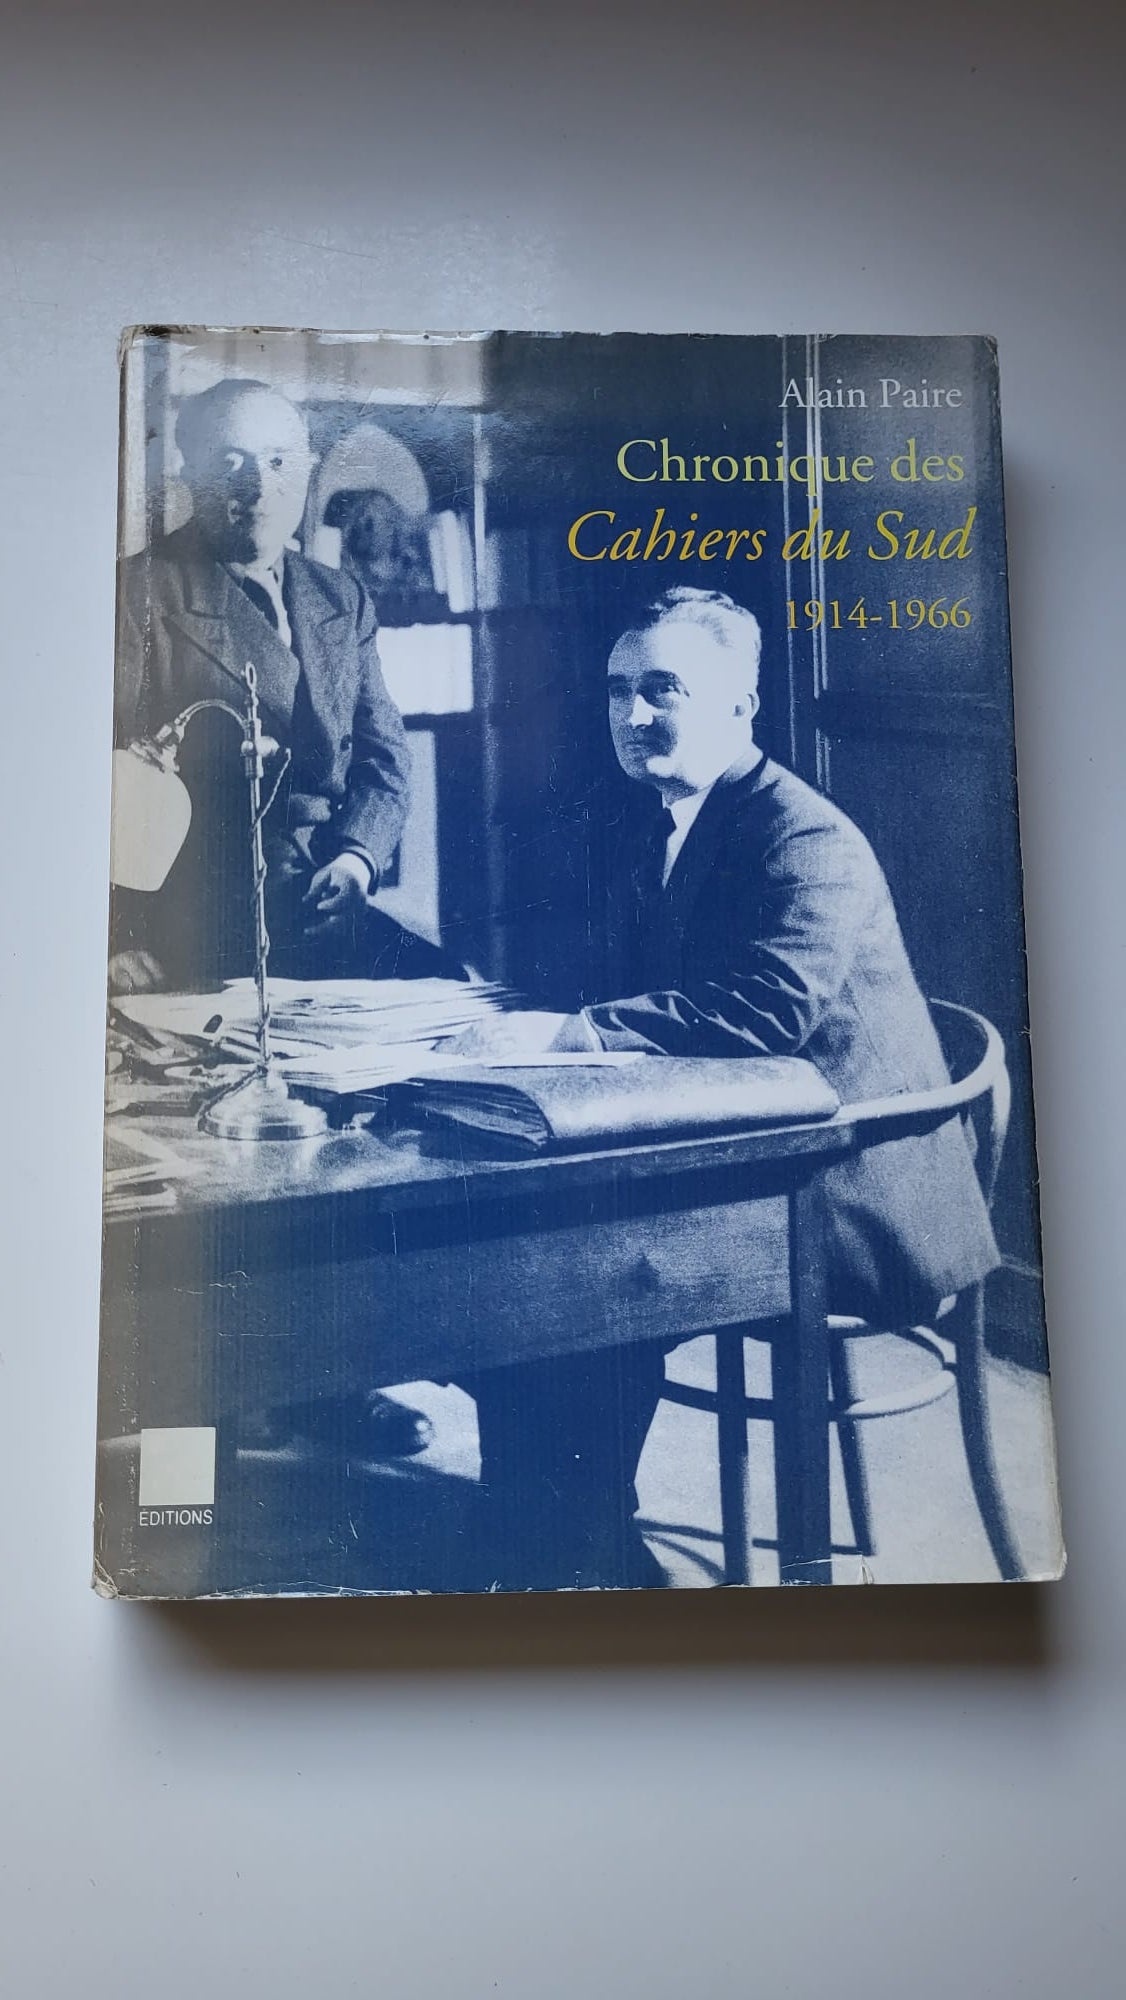 Chronique des cahiers du Sud 1914 - 1966